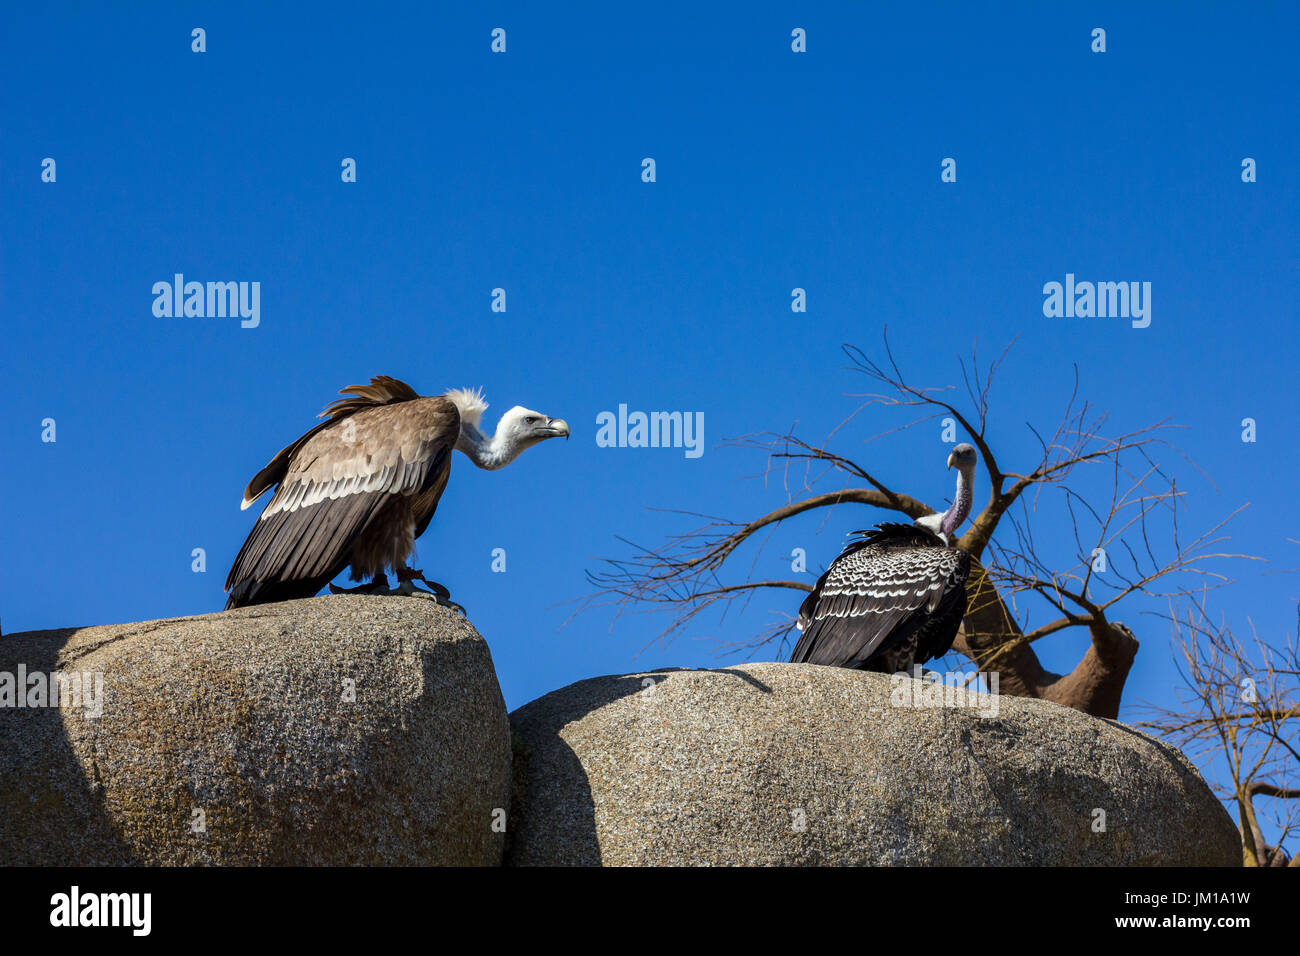 La fauna animale scena dalla natura. vulture seduto sulla roccia Foto Stock